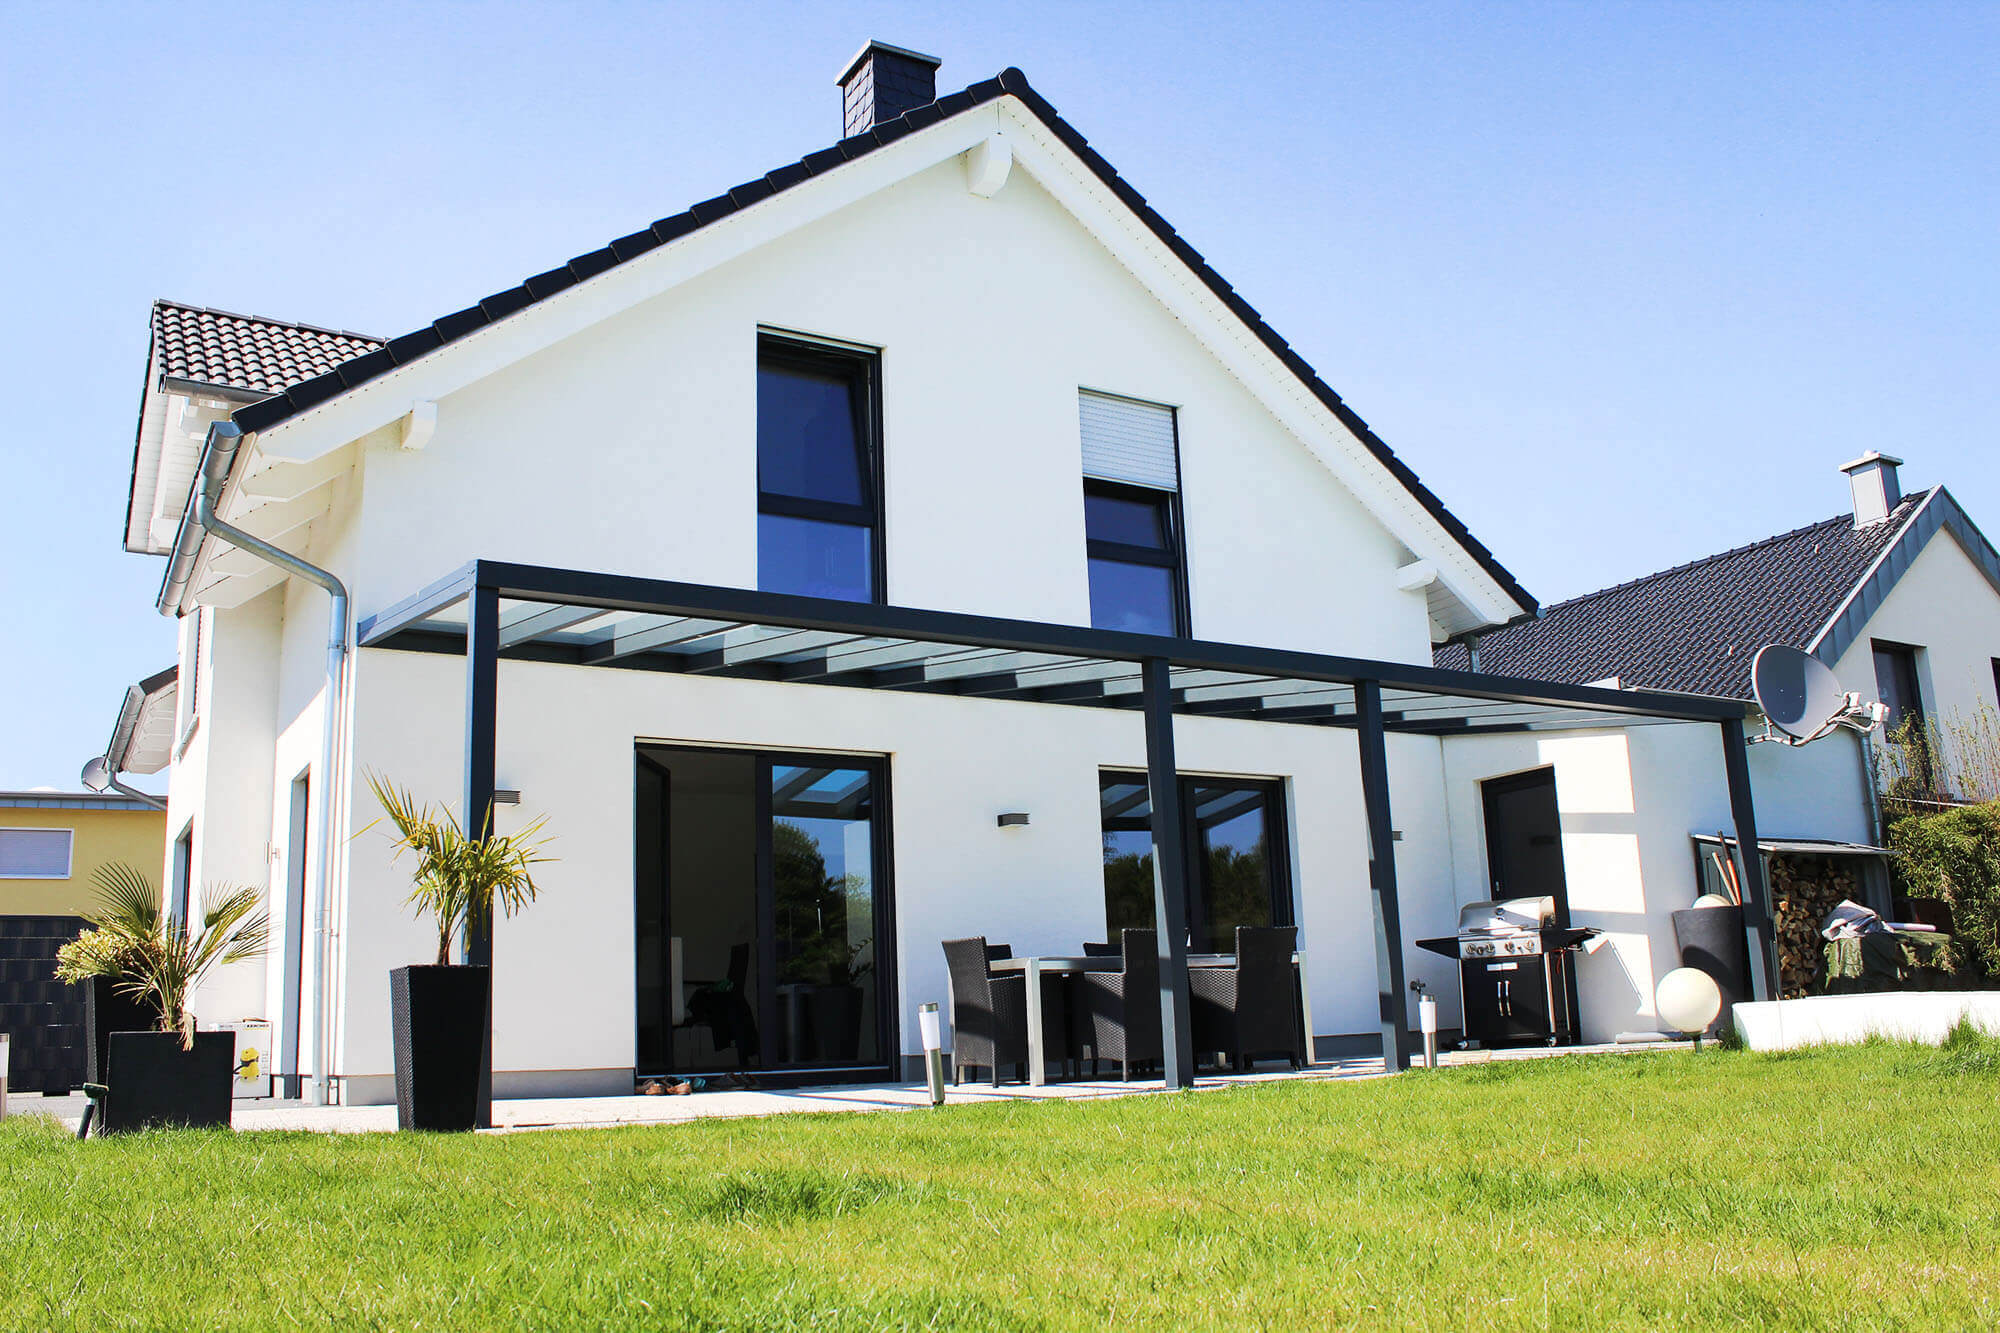 Terrassenüberdachung schwarz mit durchsichtigem VSG-Glas an weißem Haus mit 2 Stützen in der Mitte